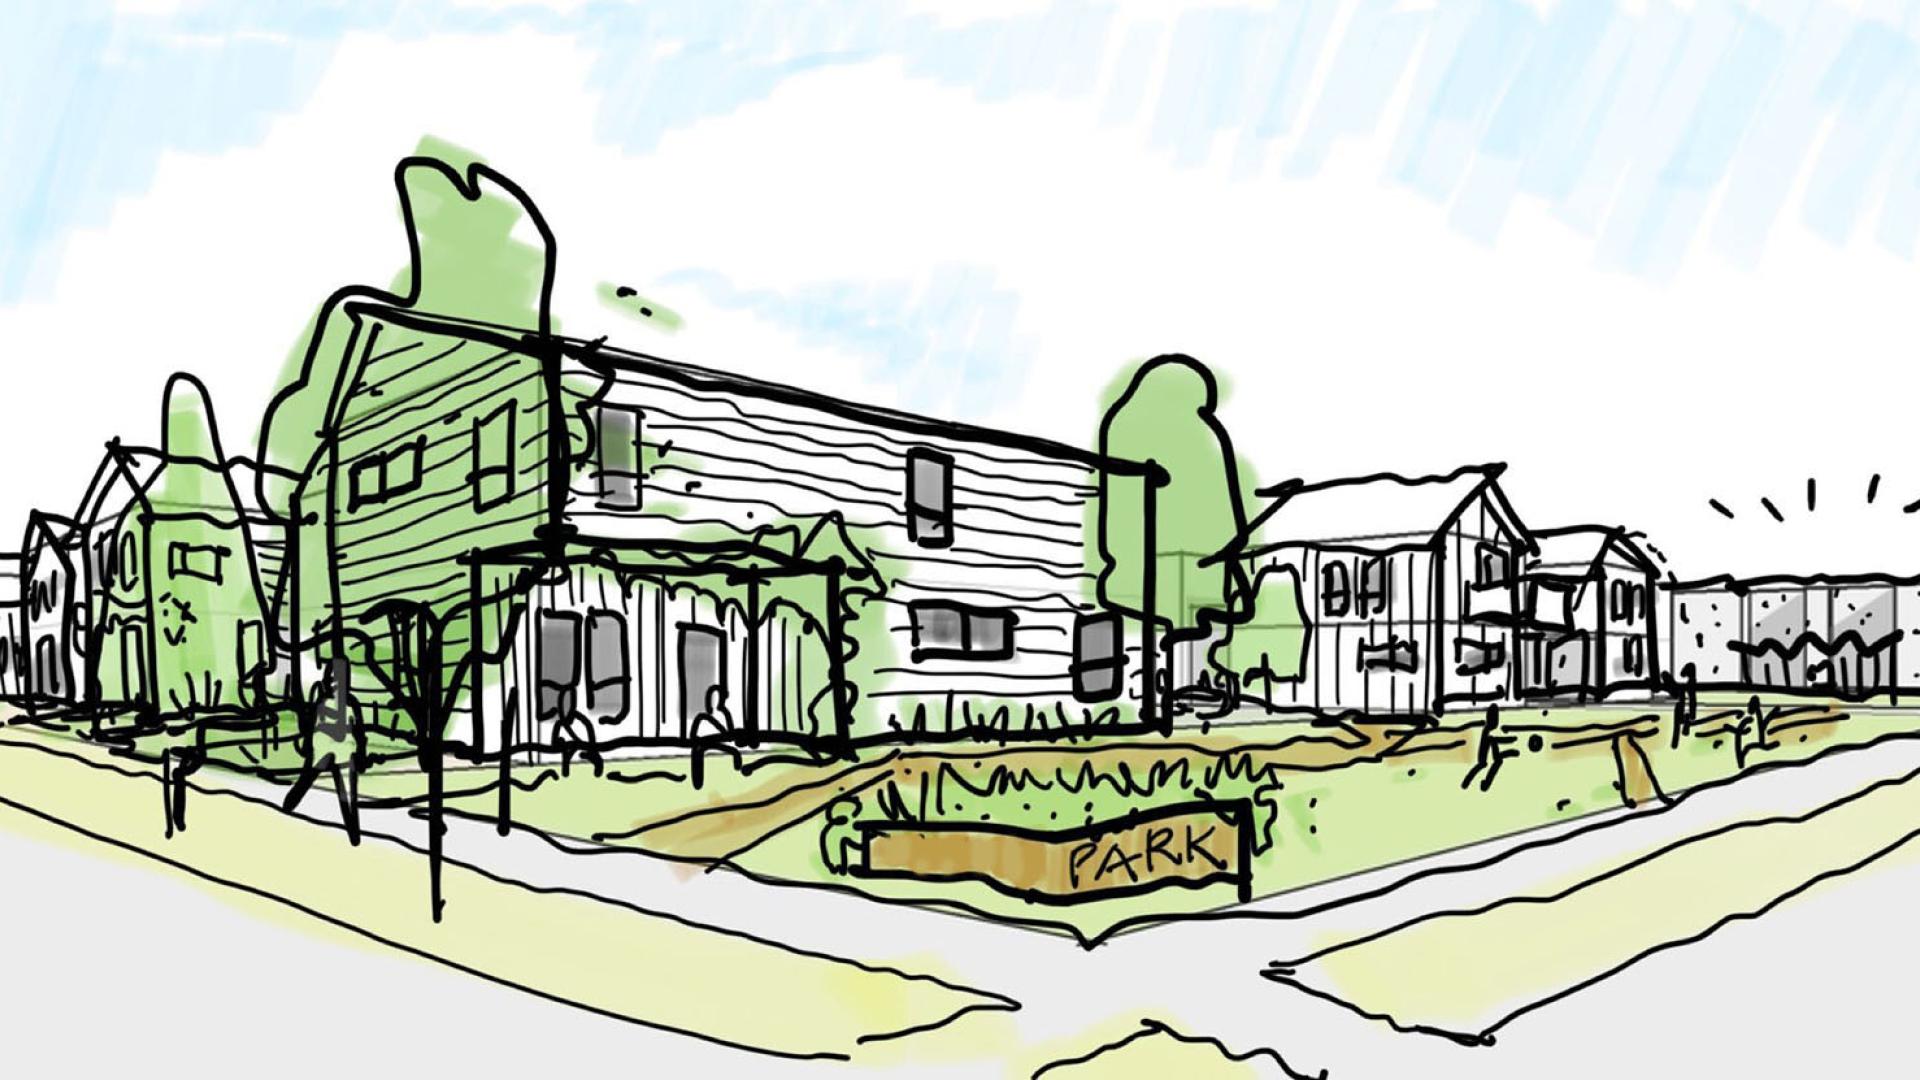 Sketch of neighborhood park for Ensley Mixed-Use Neighborhood in Birmingham, Alabama.